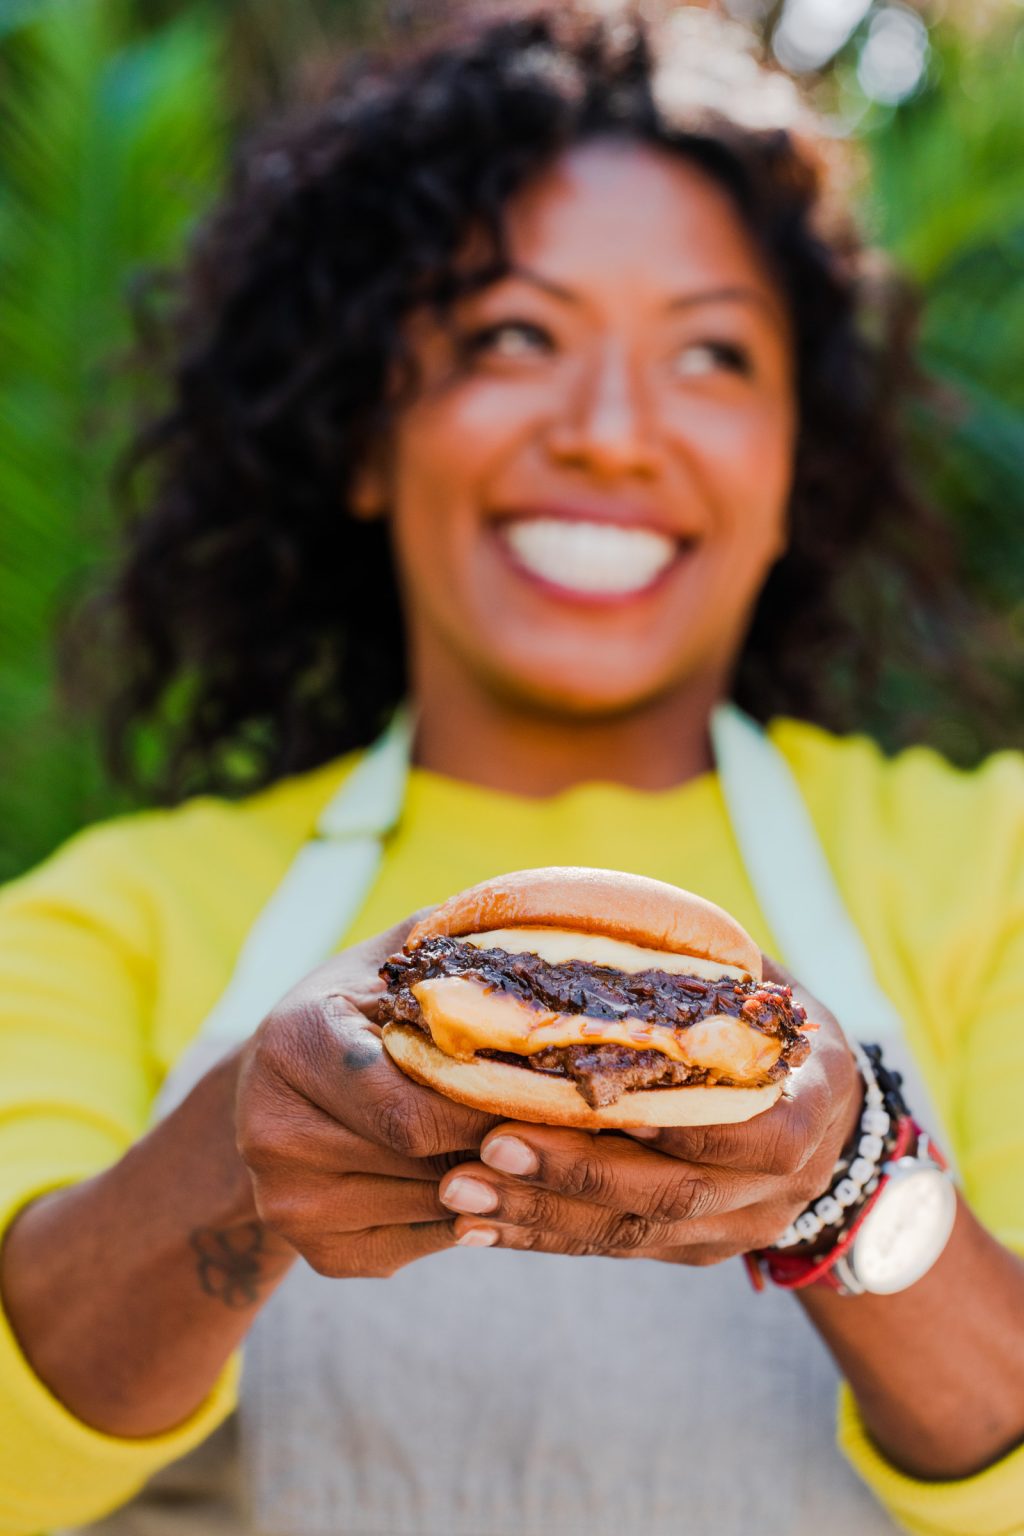 Nyesha Arrington holding the Aisoon Burger